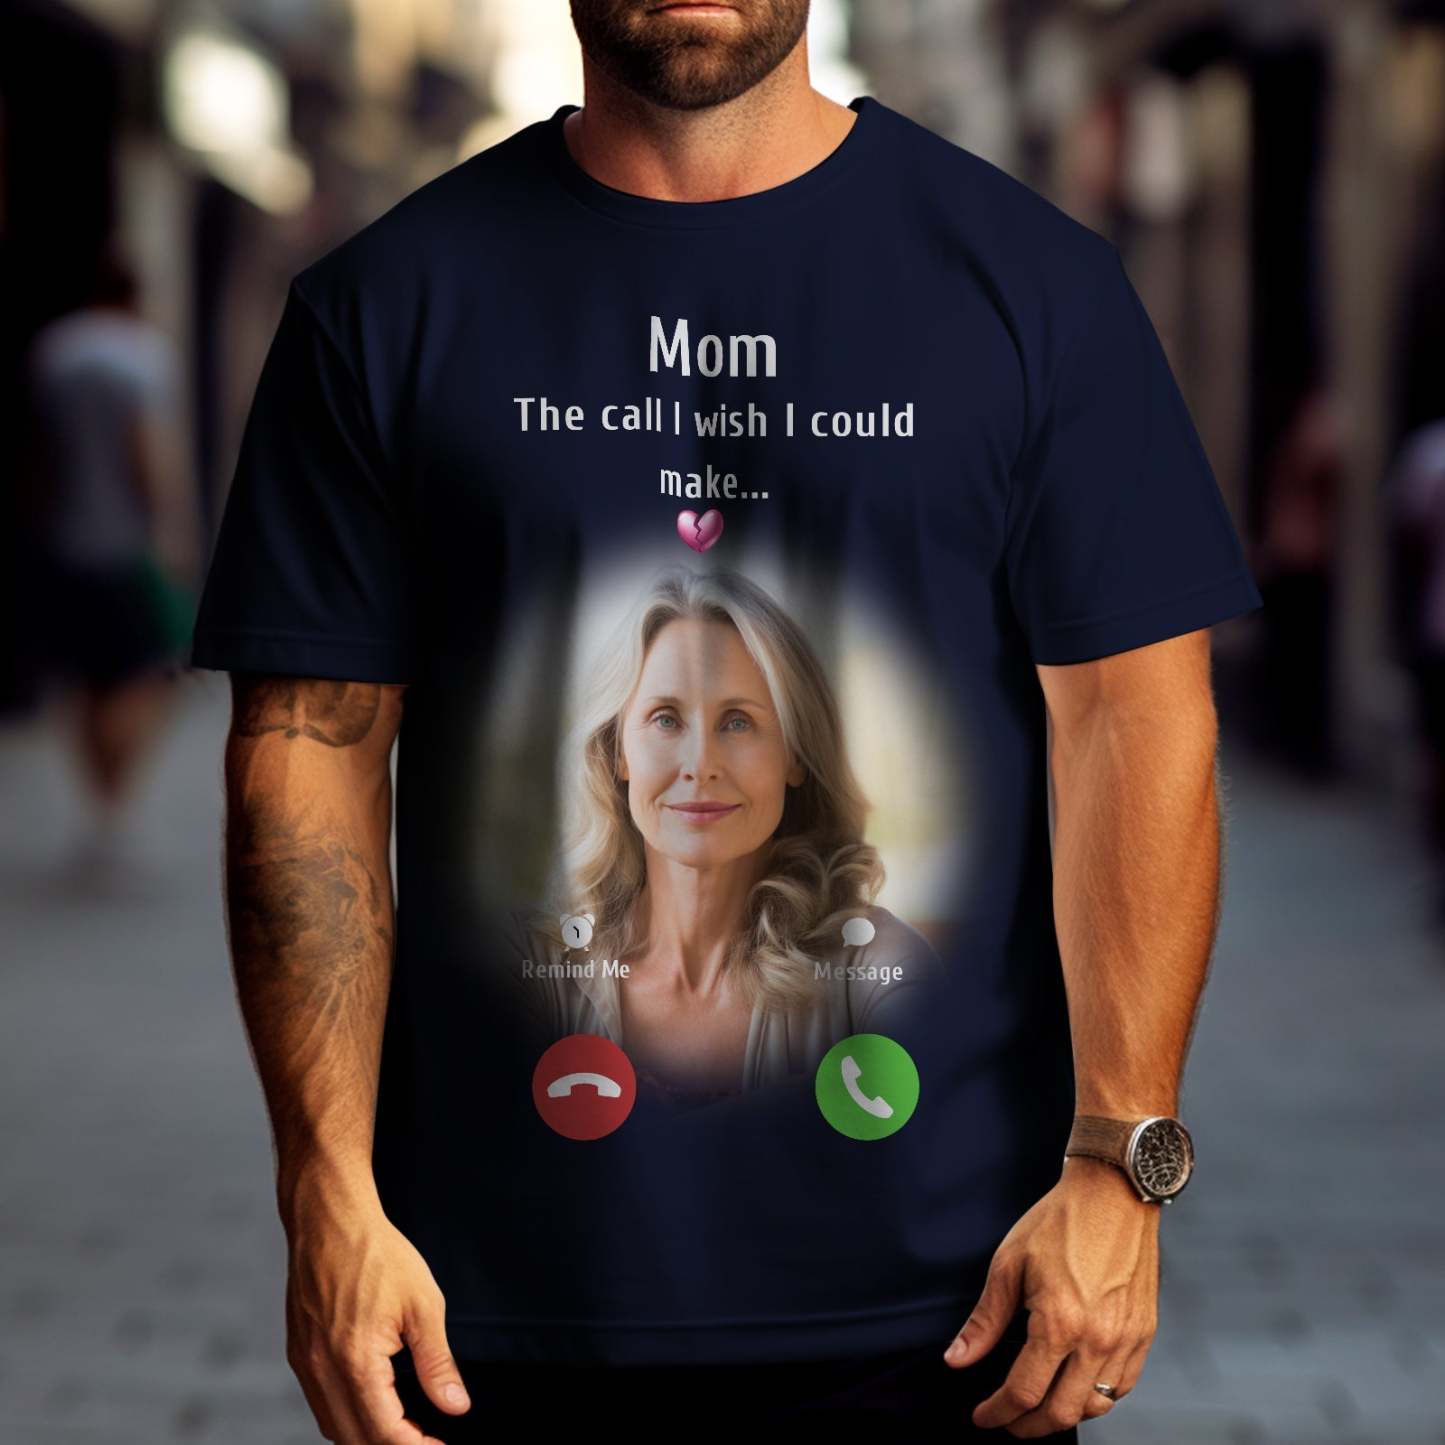 Camiseta Personalizada Con Foto Conmemorativa Para Mamá, Idea De Regalo Conmemorativo, Camisa Personalizada, La Llamada Que Desearía Poder Hacer - CalzoncillosfotoES